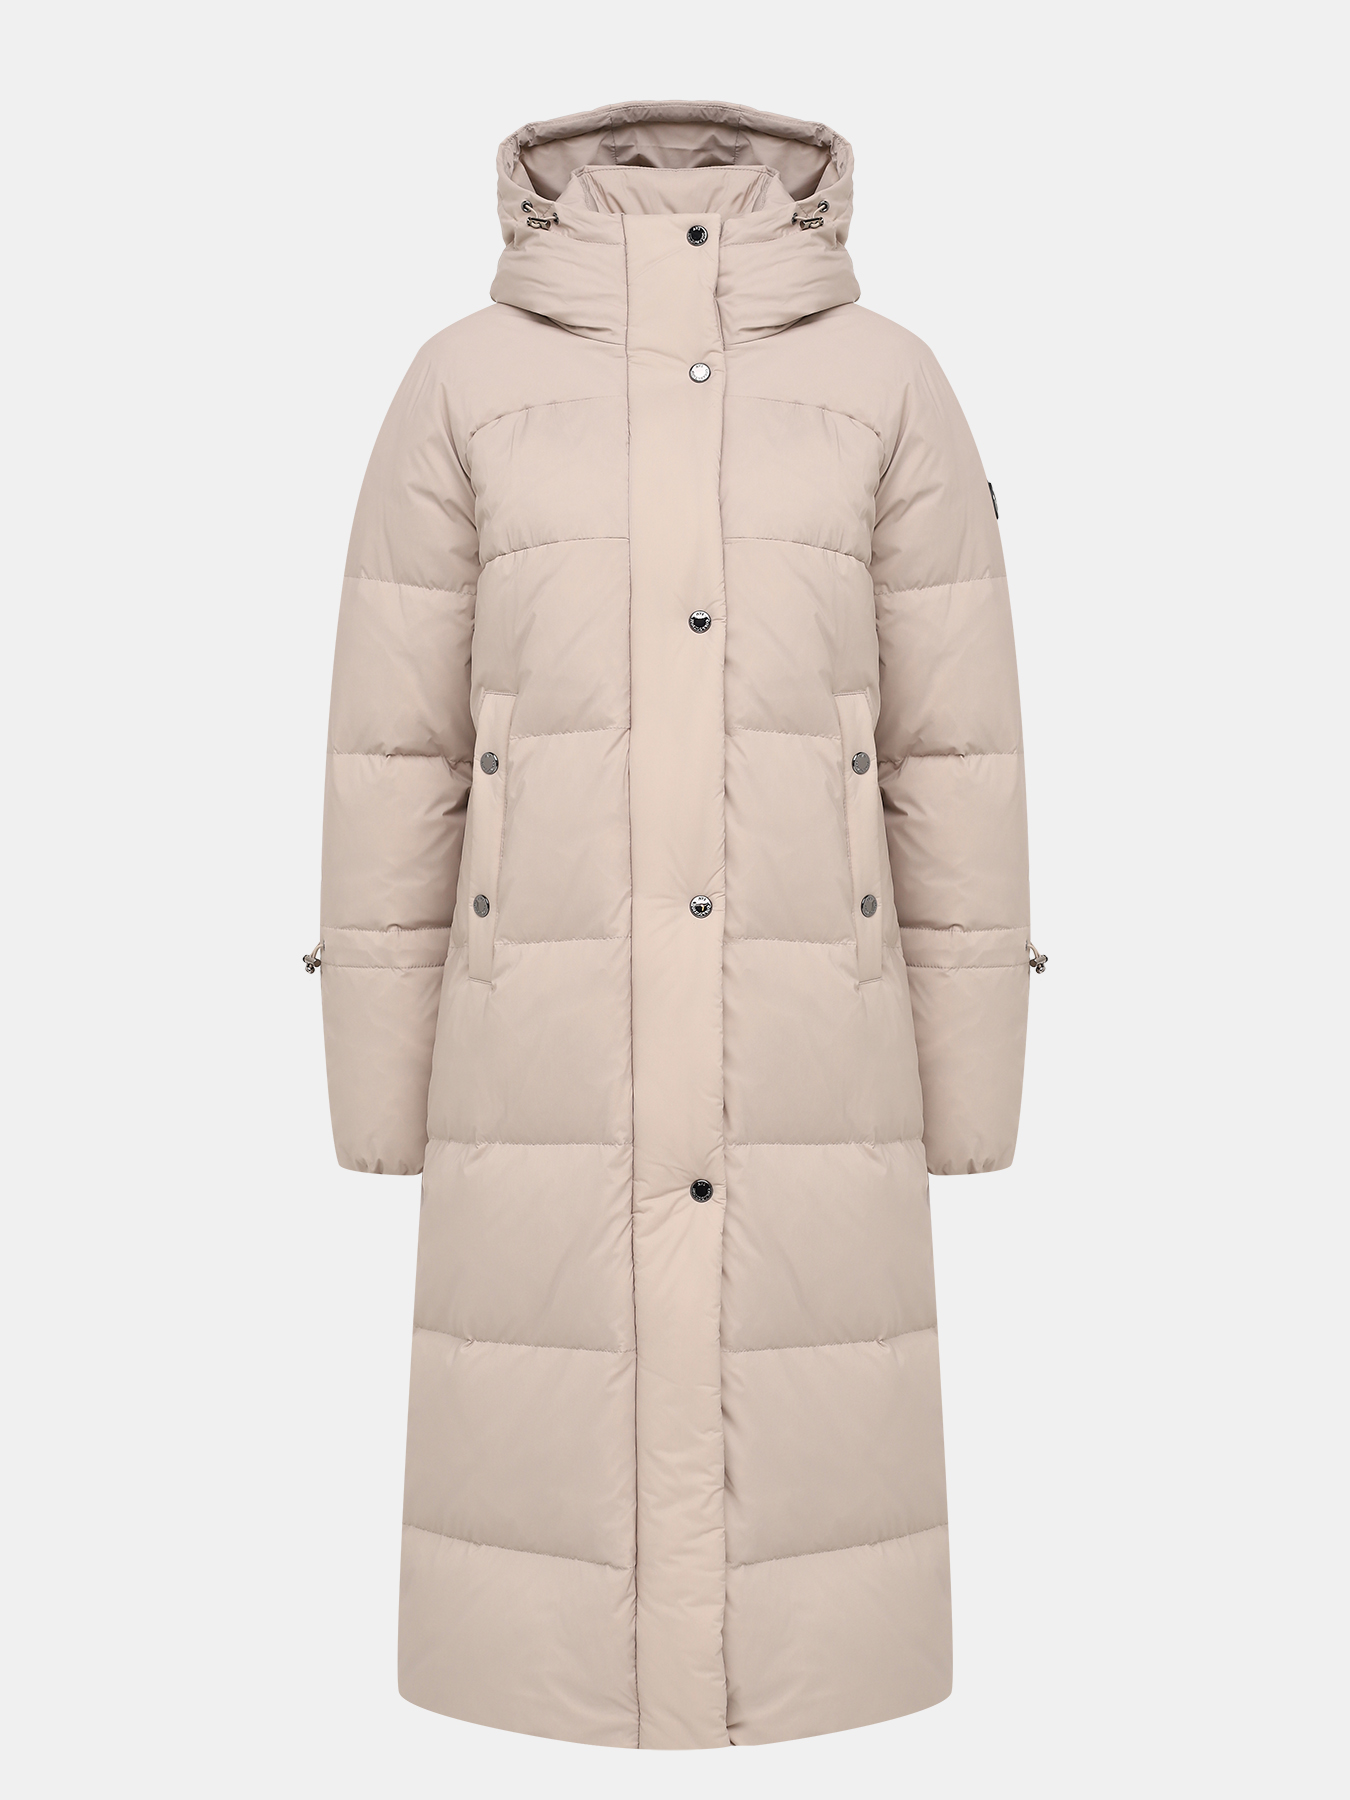 Пальто зимнее AVI 433604-018, цвет бежевый, размер 36